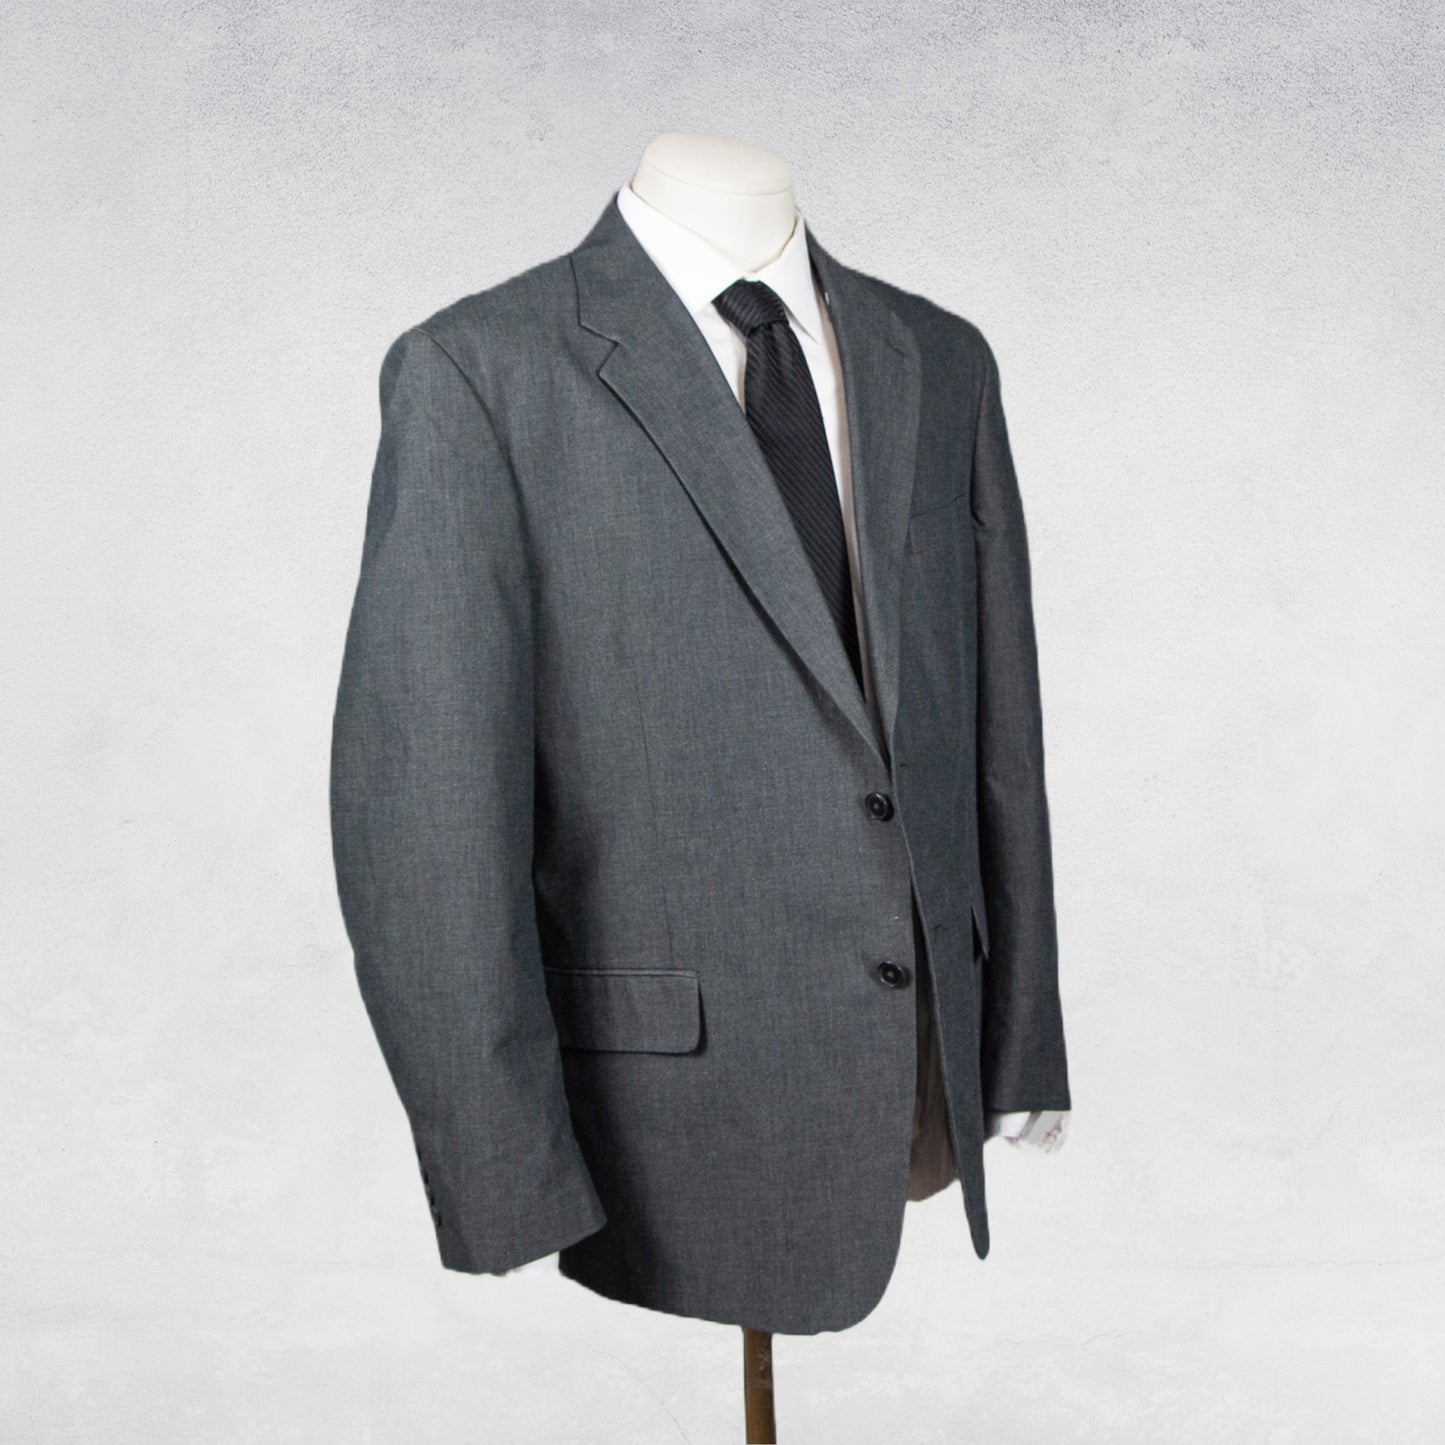 Stafford Essentials Suit Jacket